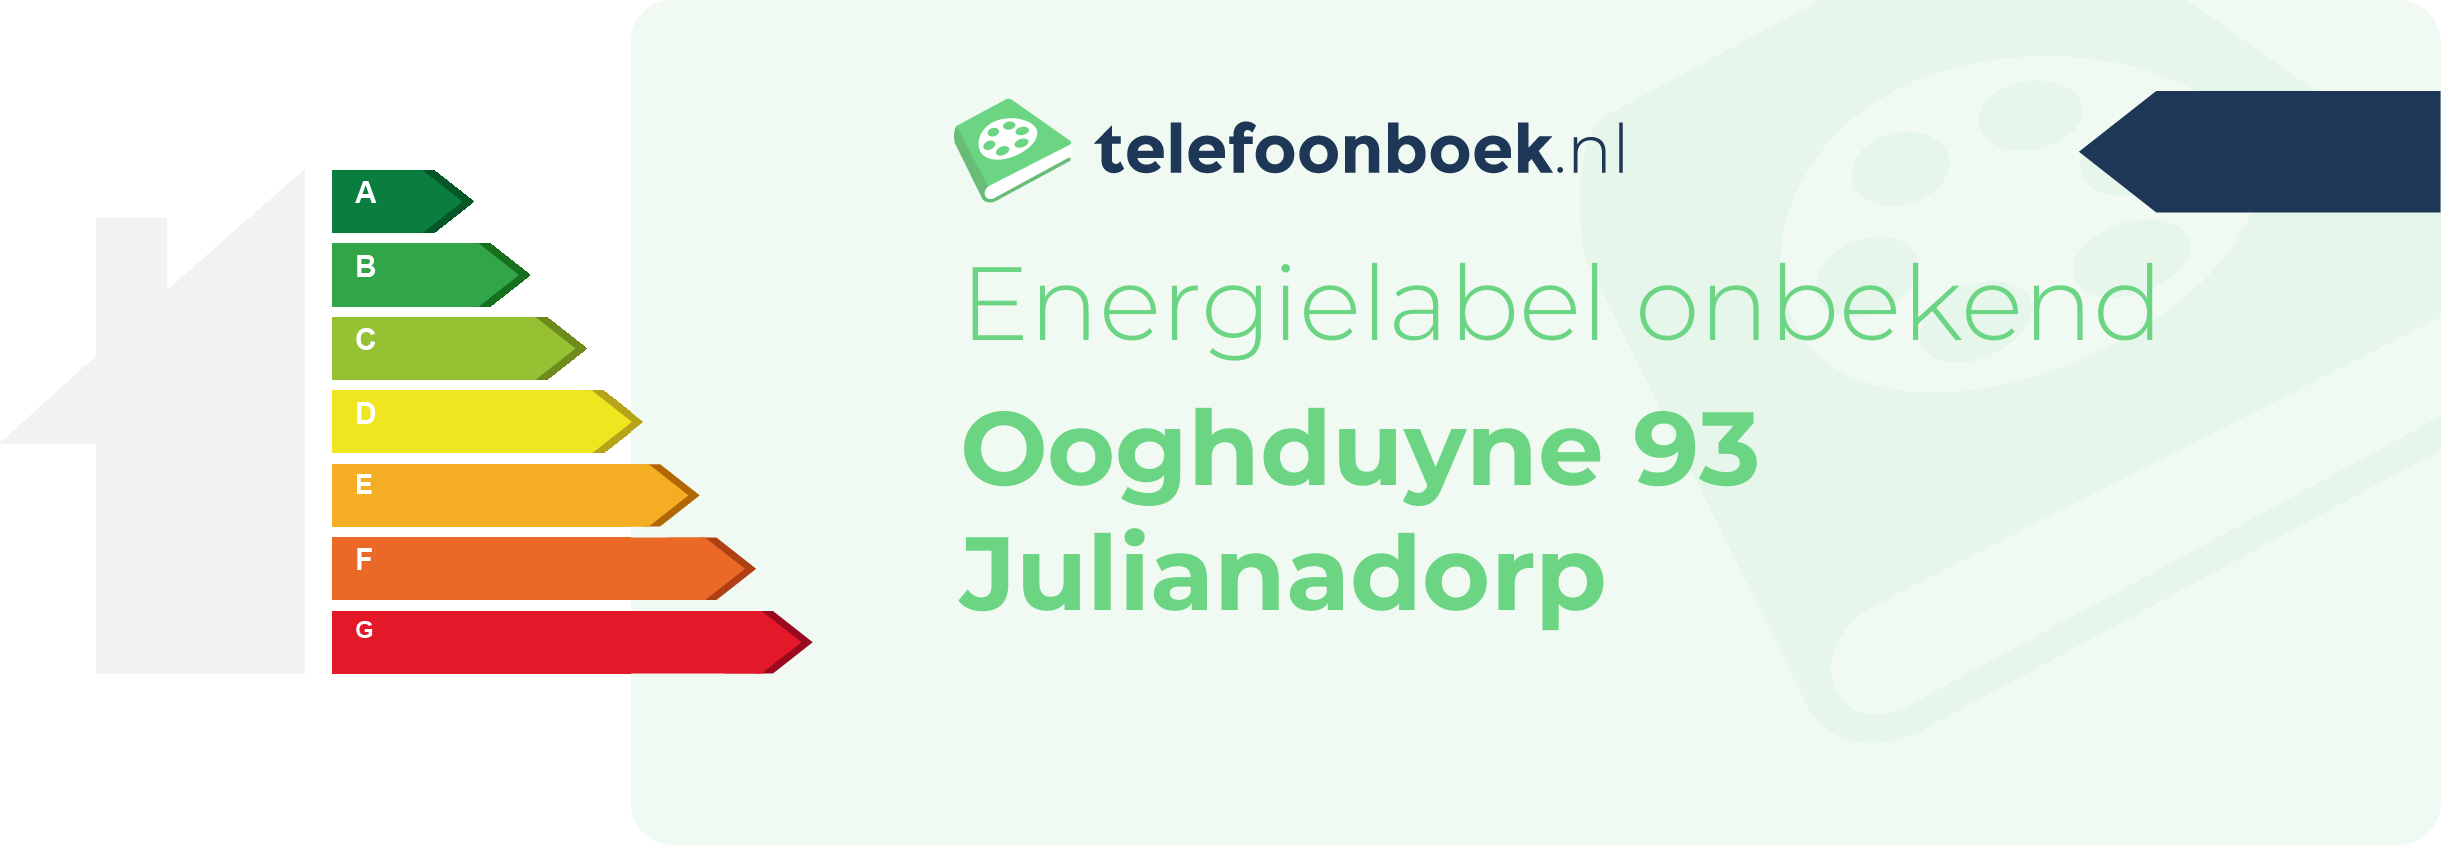 Energielabel Ooghduyne 93 Julianadorp